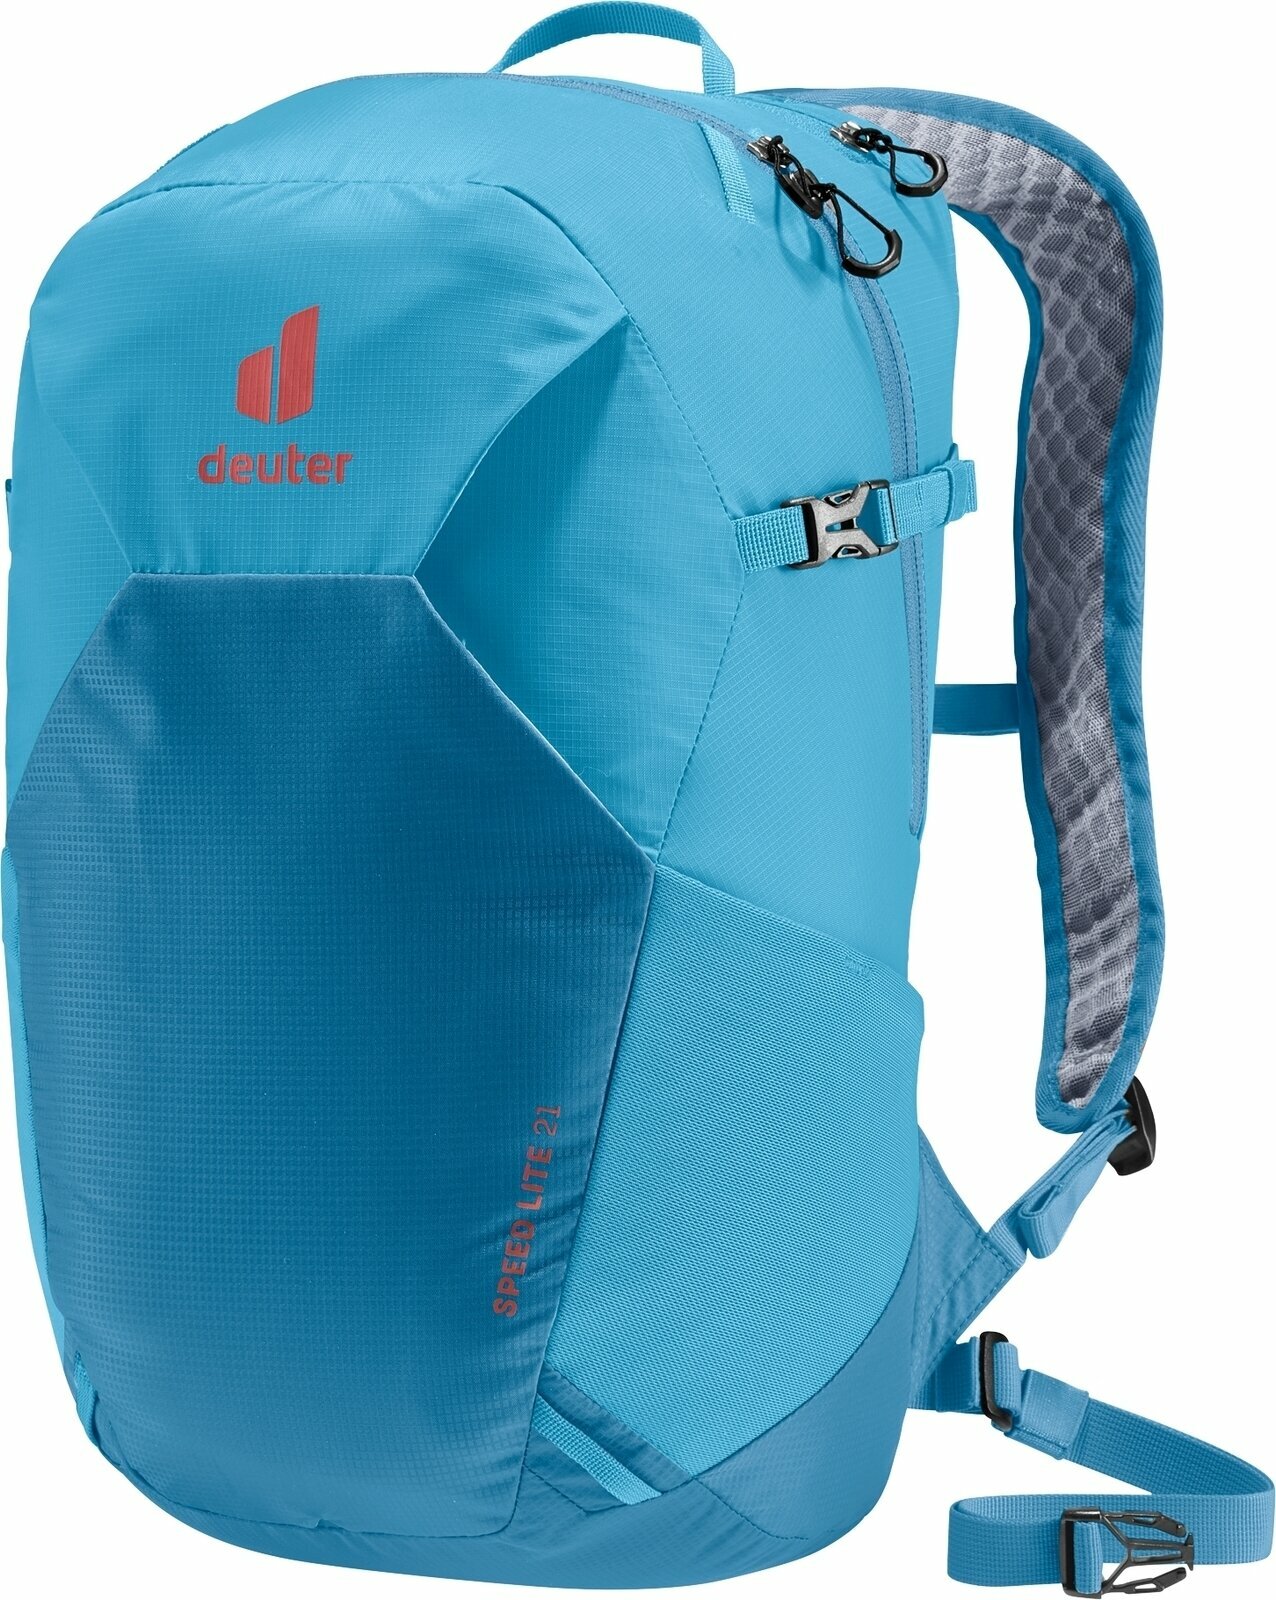 Outdoor plecak Deuter Speed Lite 21 Azure/Reef Outdoor plecak